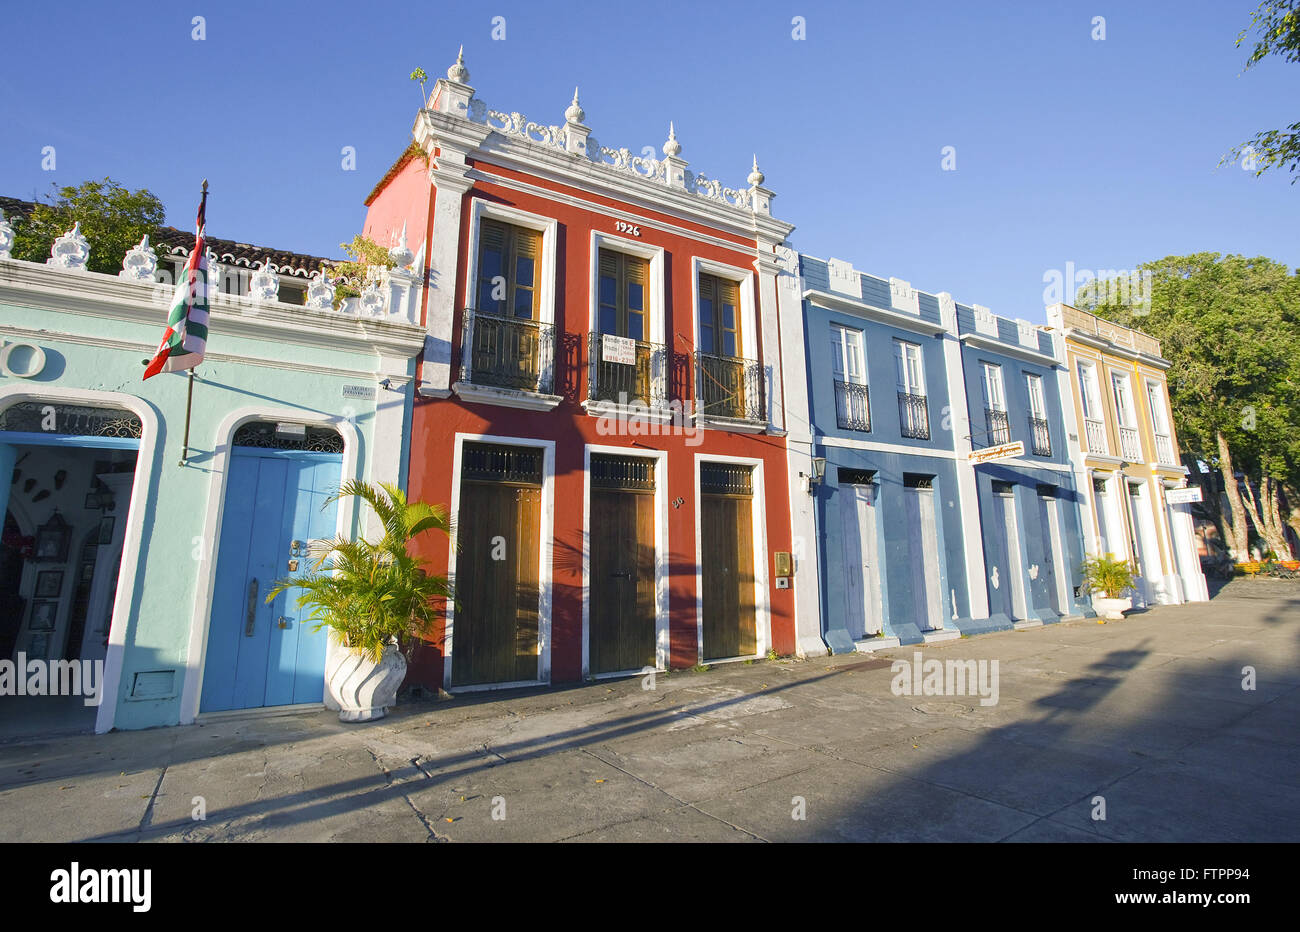 Sitio histórico con el Dr. Paulo Souto casas coloniales - centro histórico Foto de stock